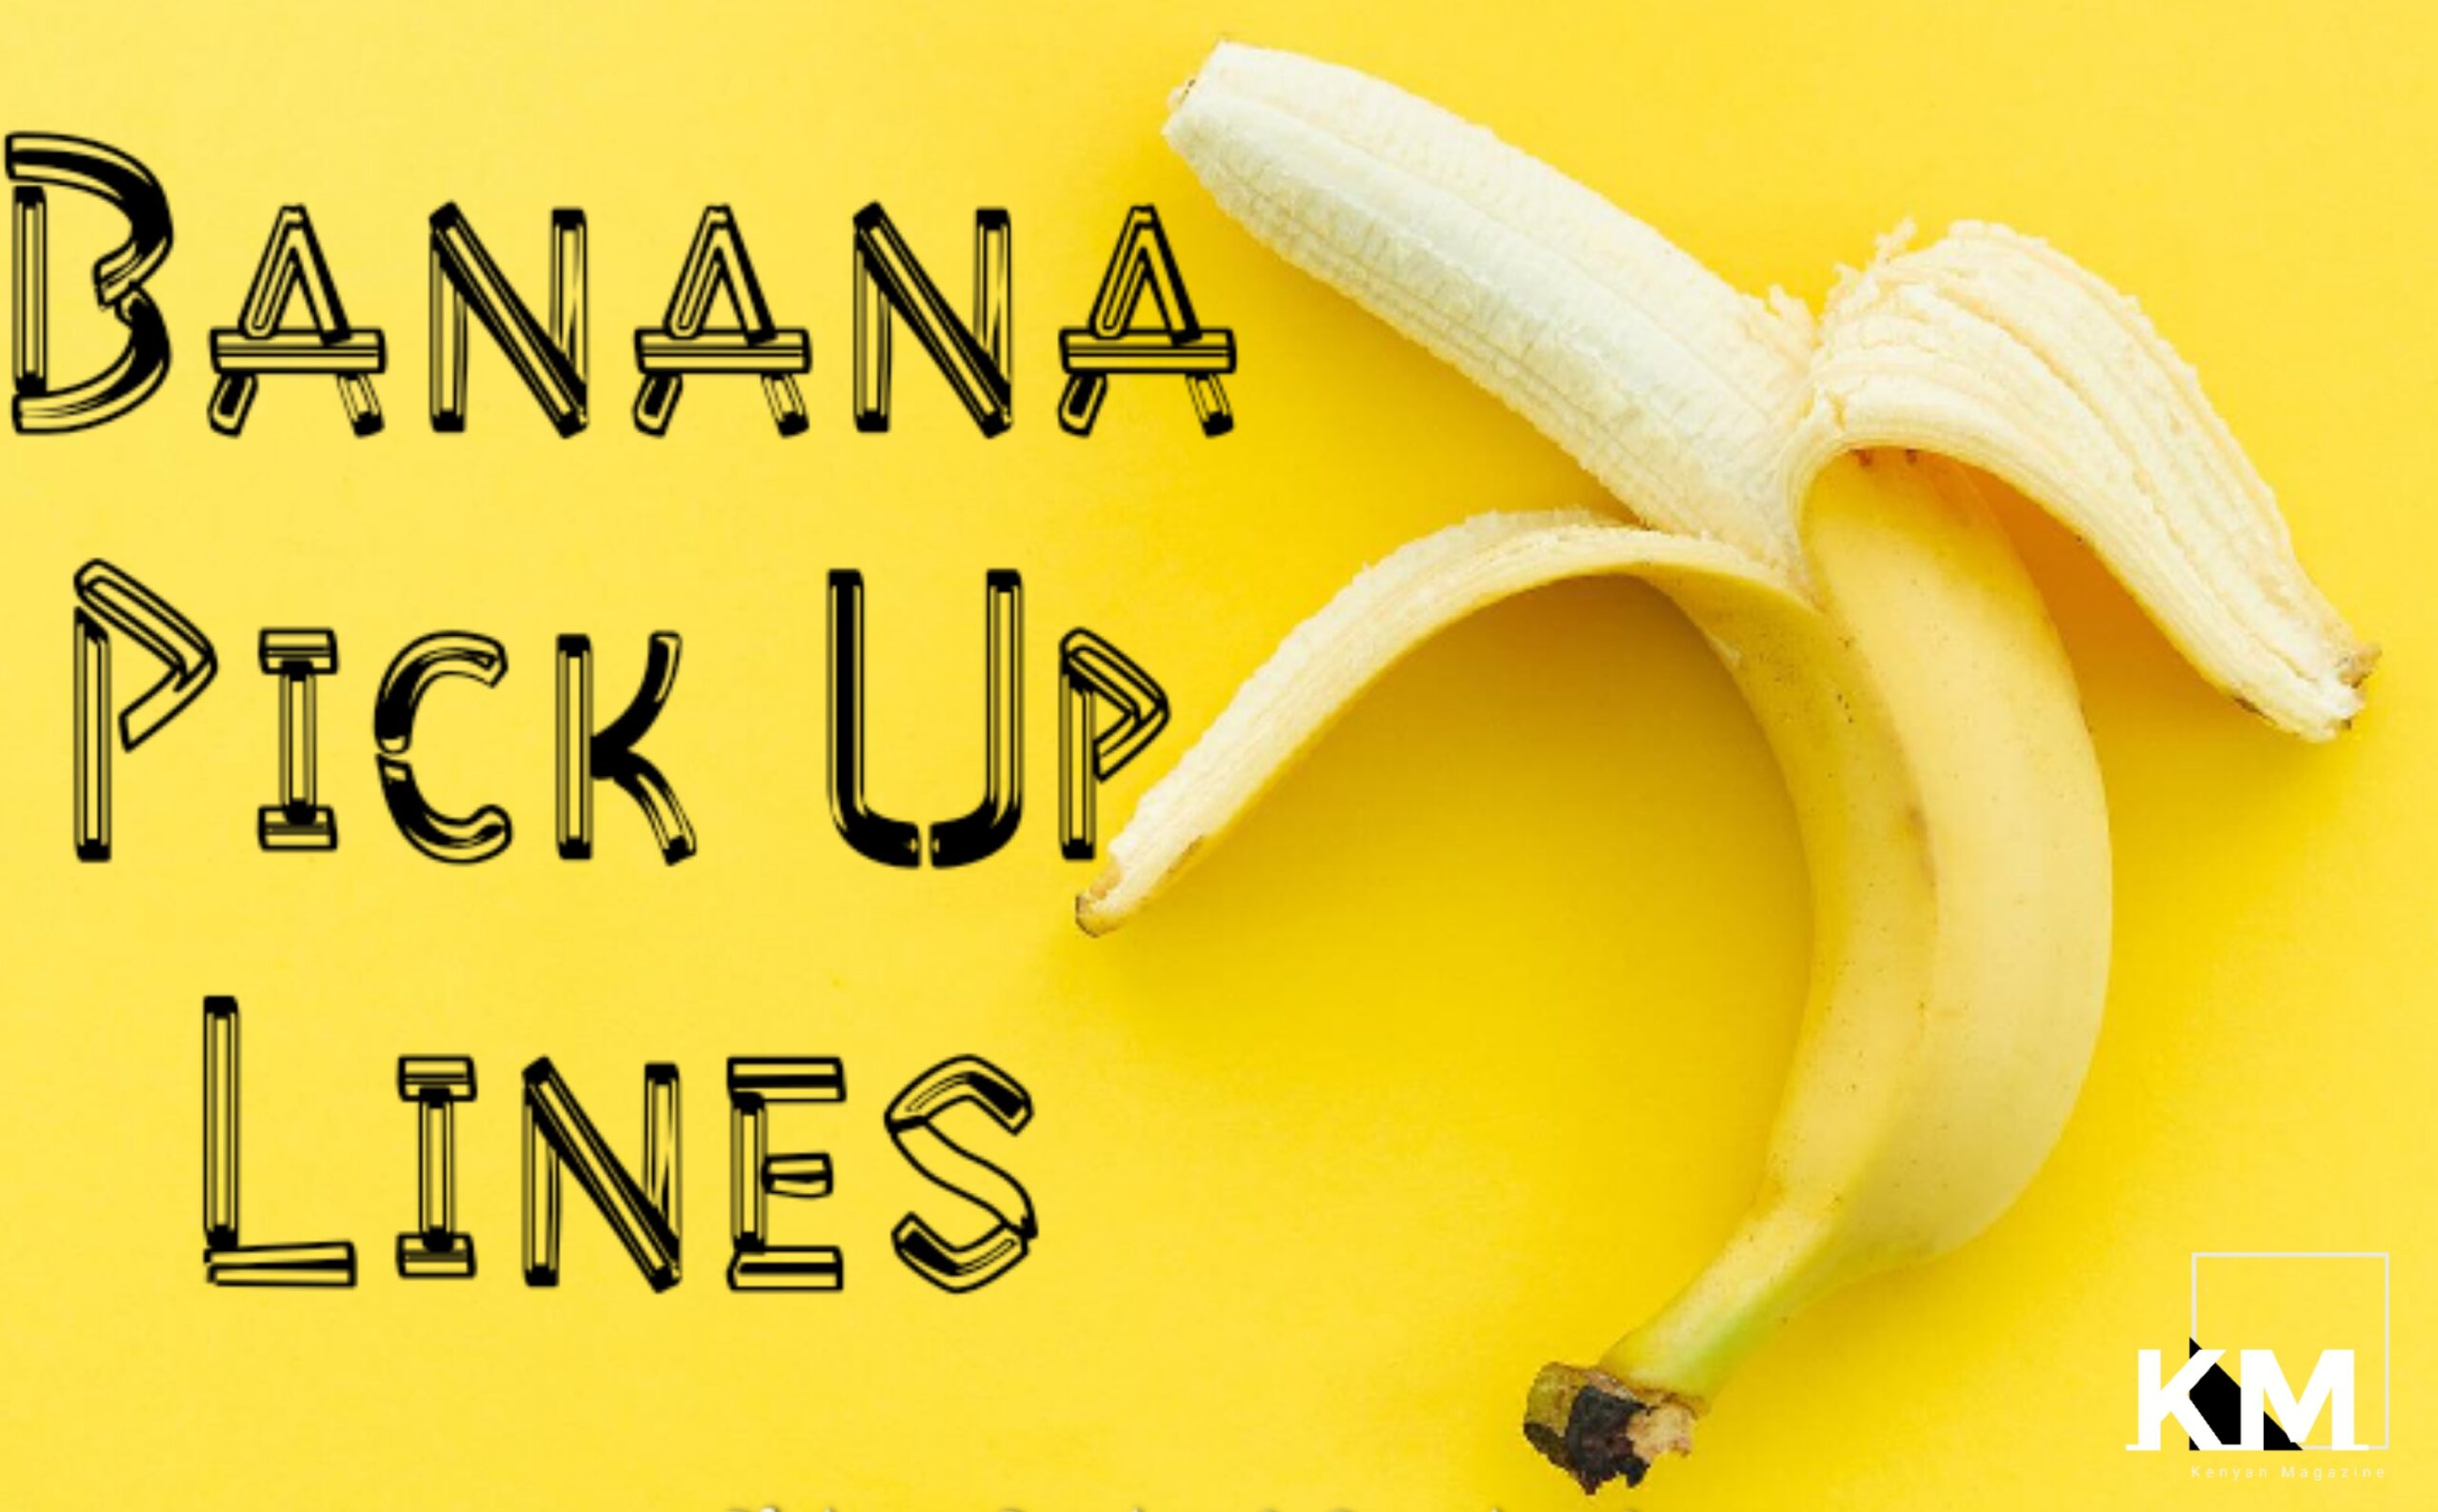 Banana pick up lines